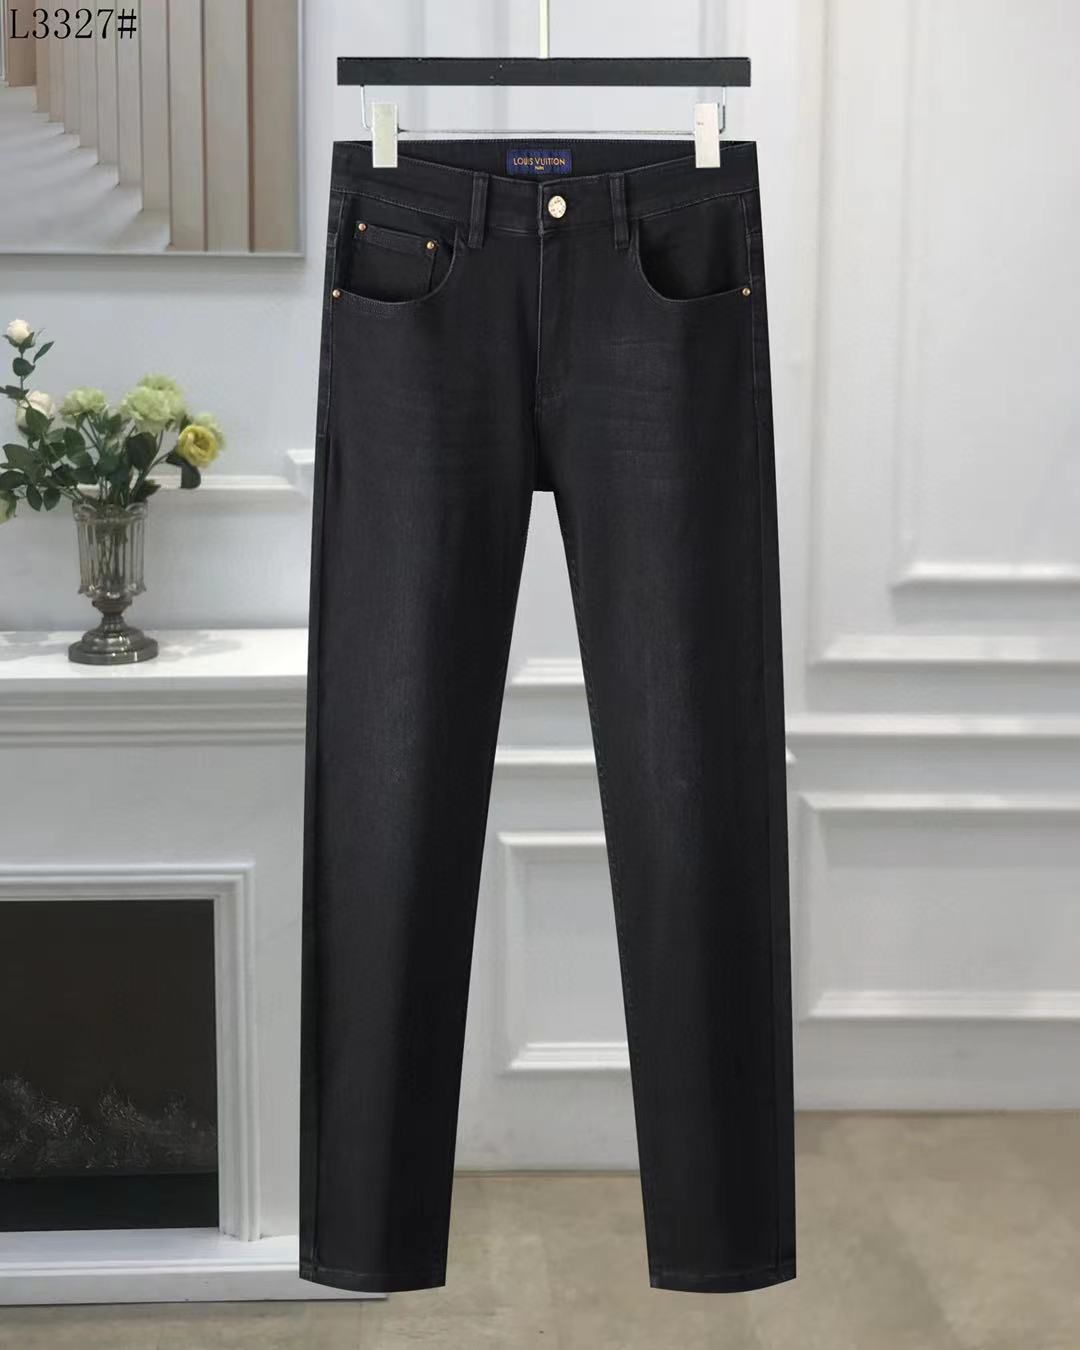 LOUIS VUITTON || Super Comfortable Premium Logo Jeans For Men - FASHION MYST 